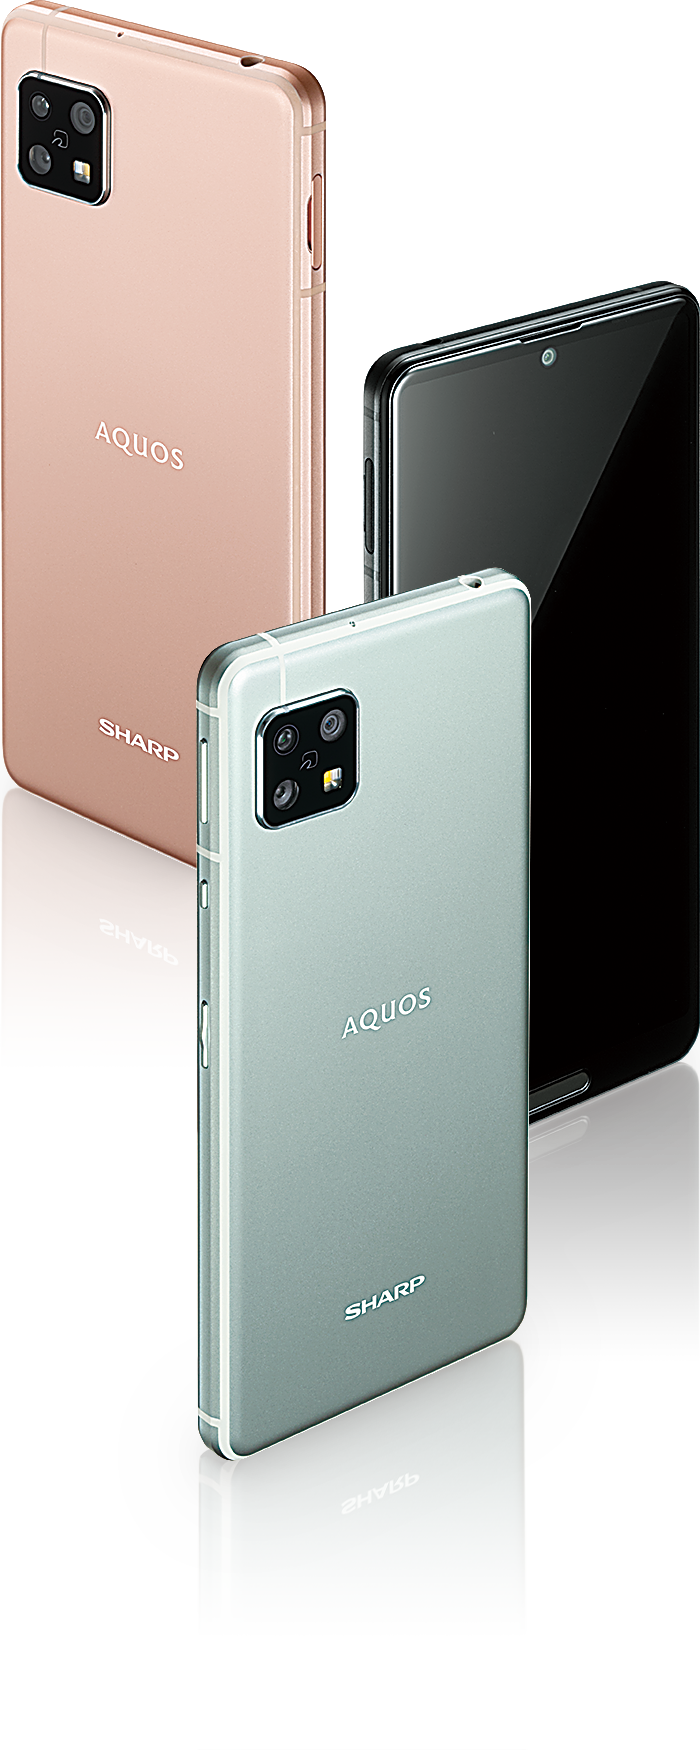 シャープ AQUOS sense 5G SIMフリー 4GB 64GB 新品